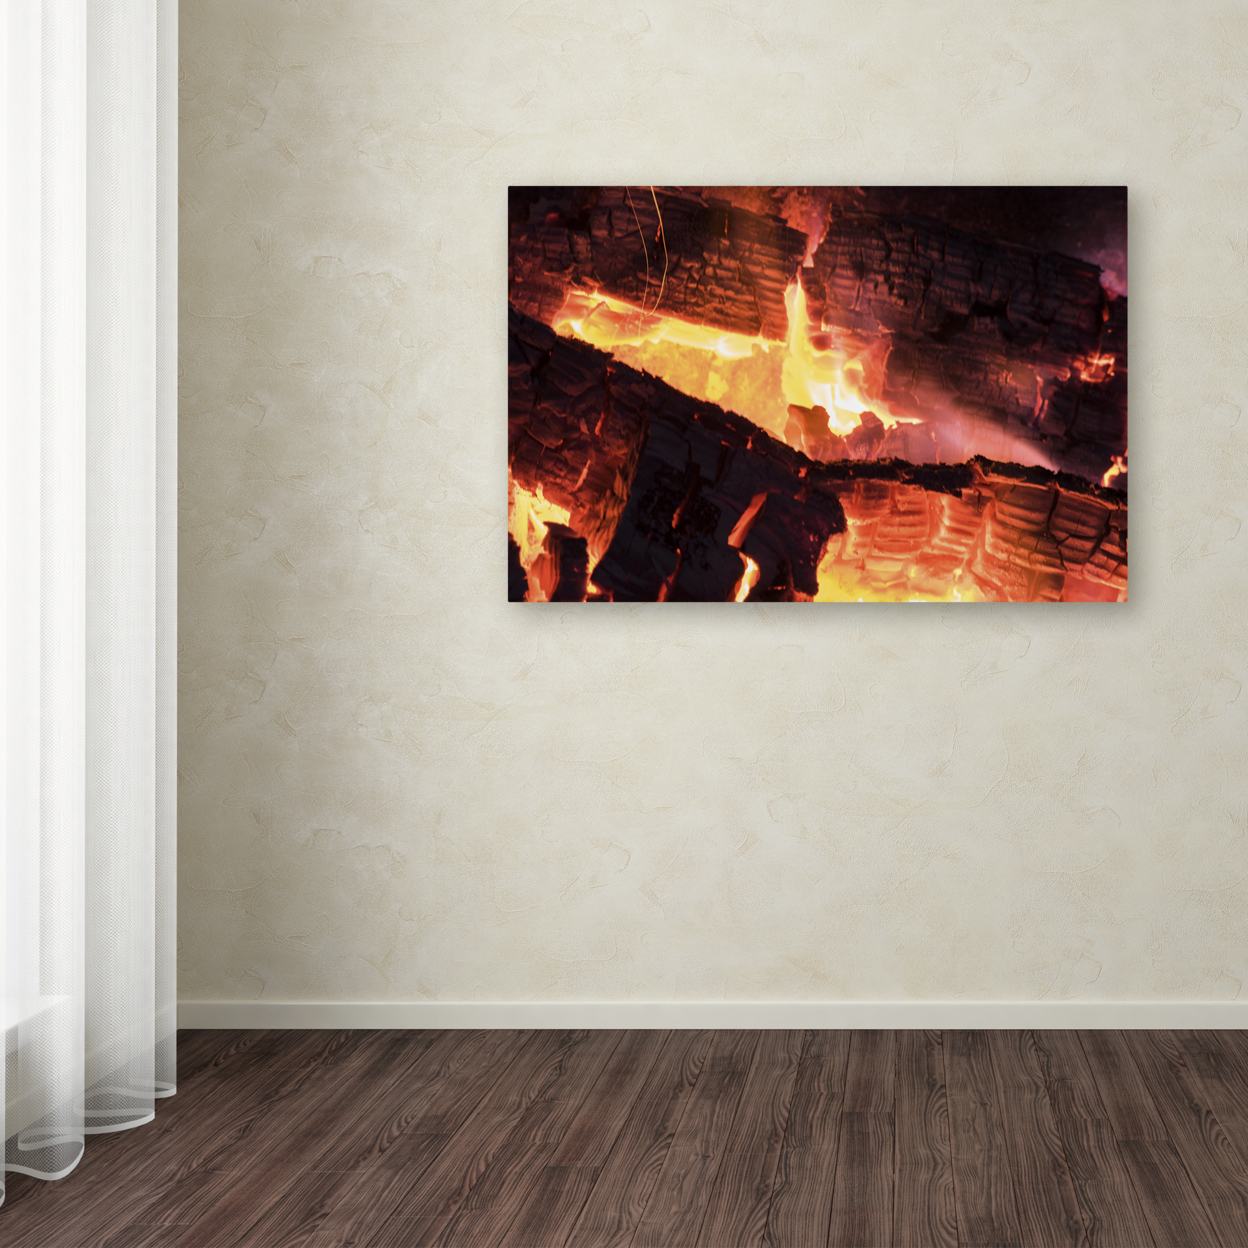 Kurt Shaffer 'Fireplace' Canvas Art 16 X 24